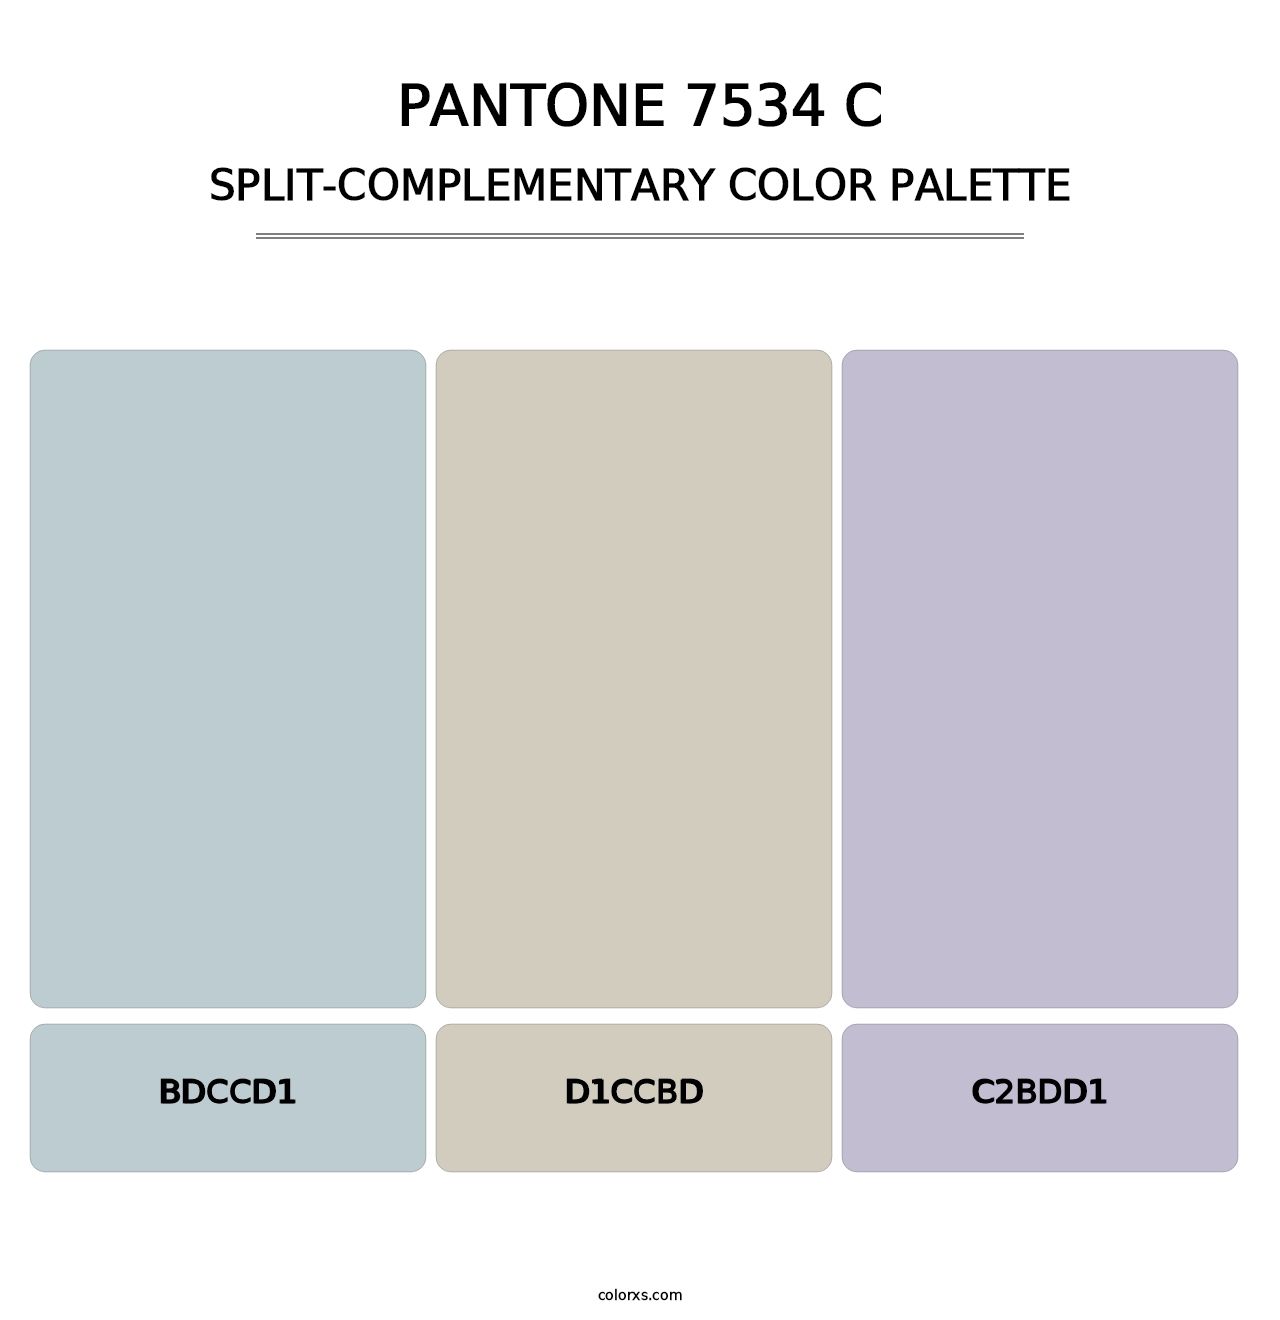 PANTONE 7534 C - Split-Complementary Color Palette